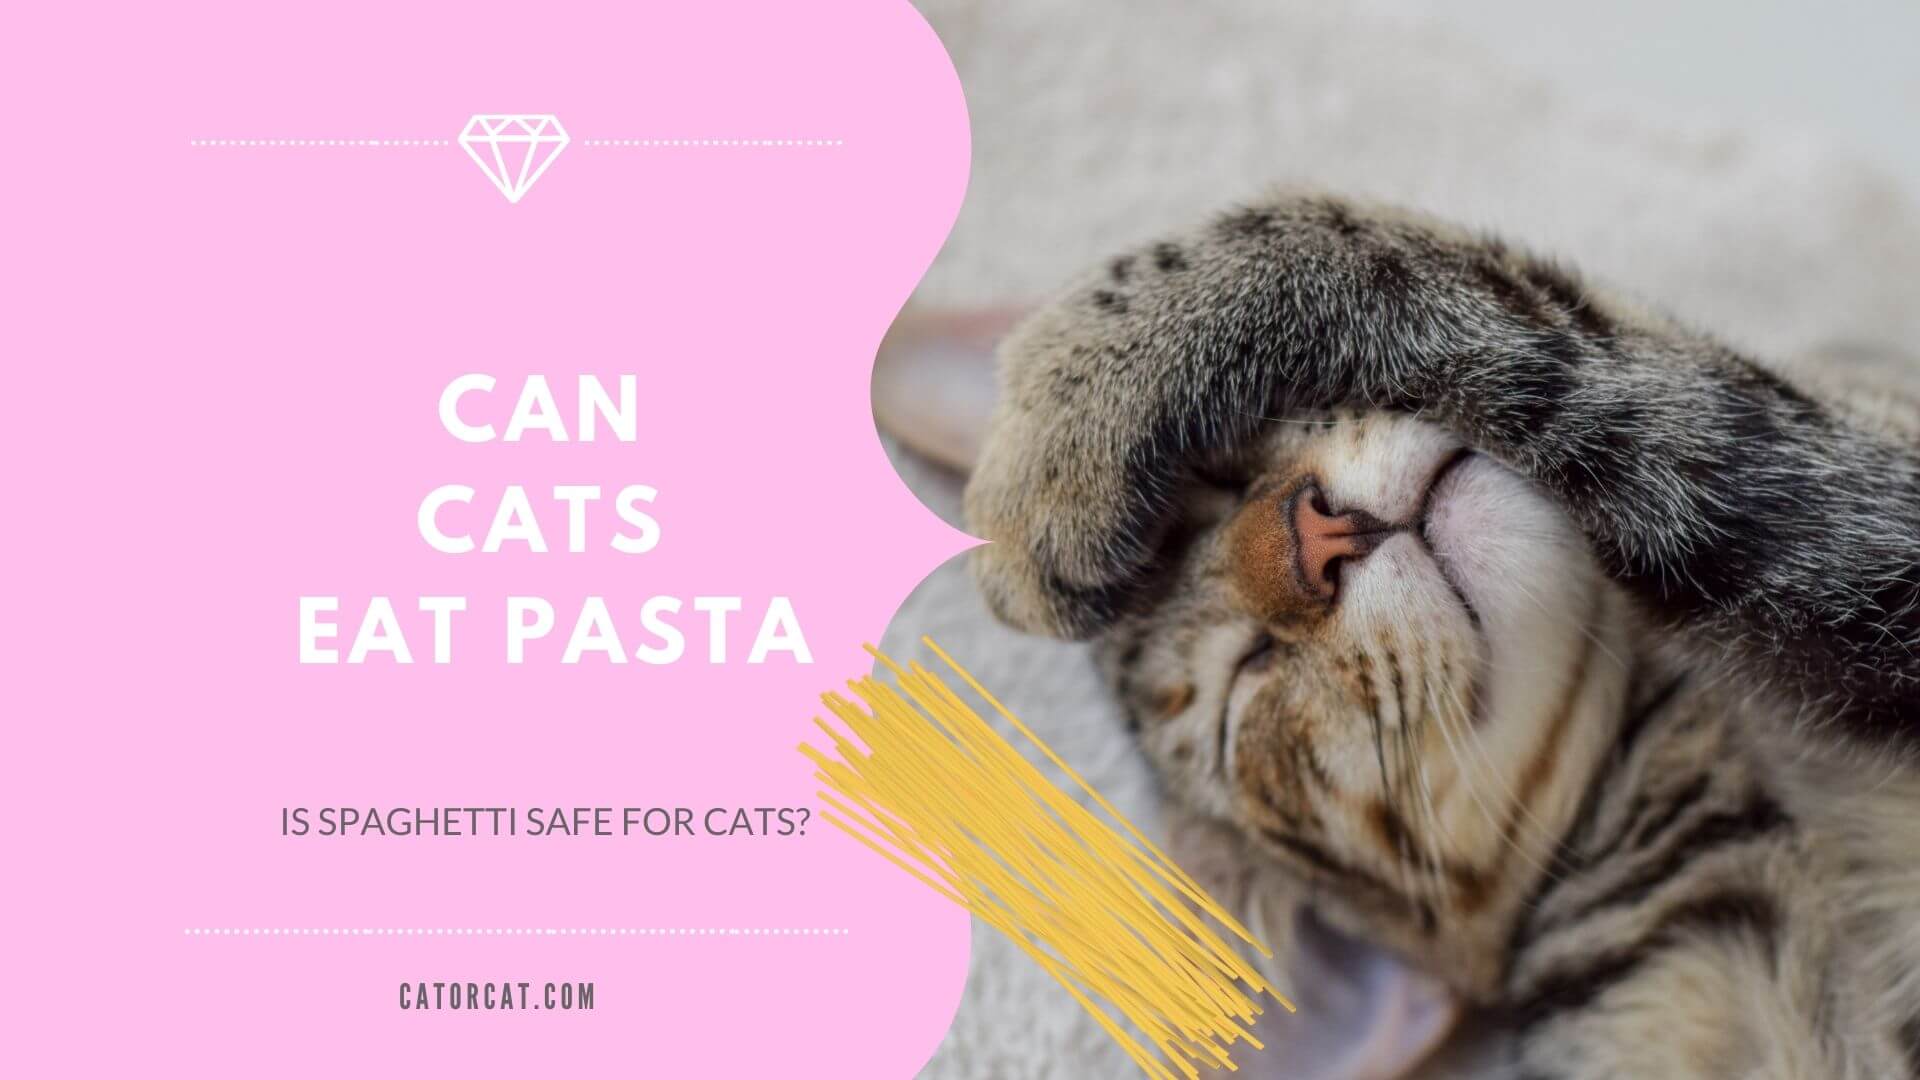 ¿El gato come espaguetis?  ¿Es la salsa de tomate segura para los gatitos?